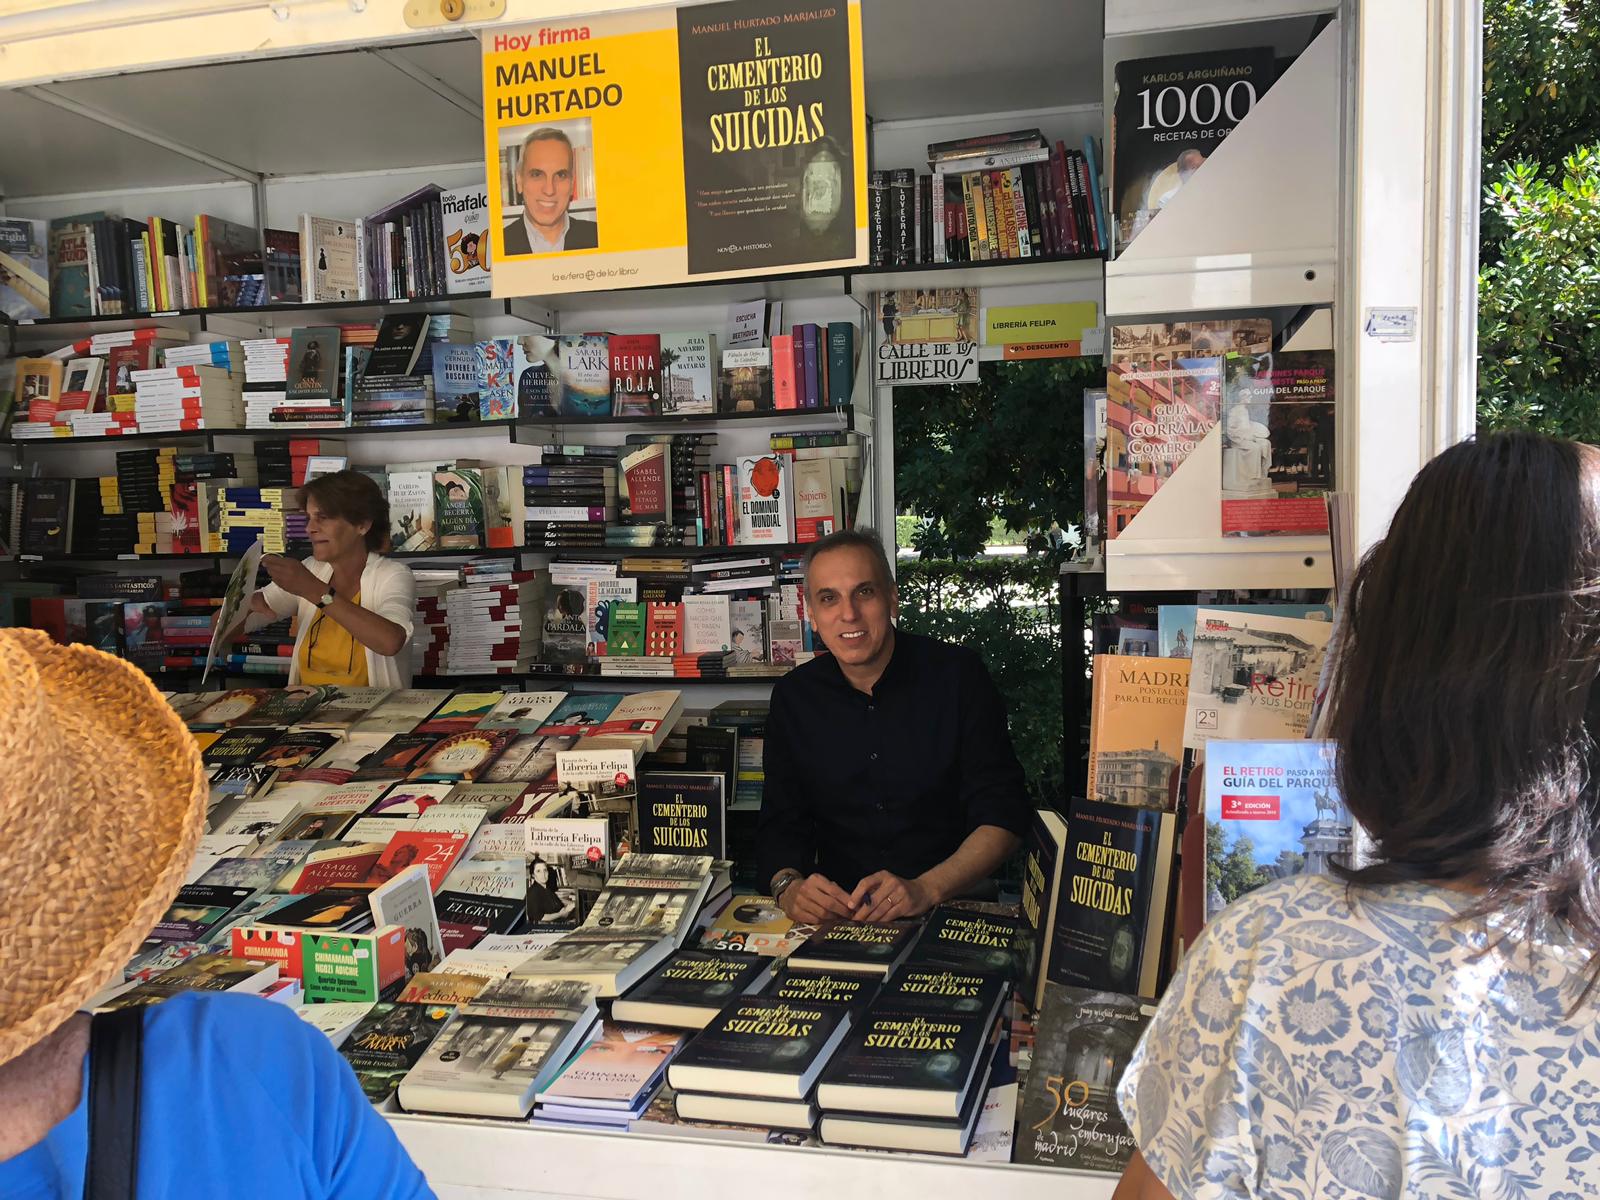 El escritor majariego Manuel Hurtado firmó ejemplares en la Feria del Libro de Madrid 2019